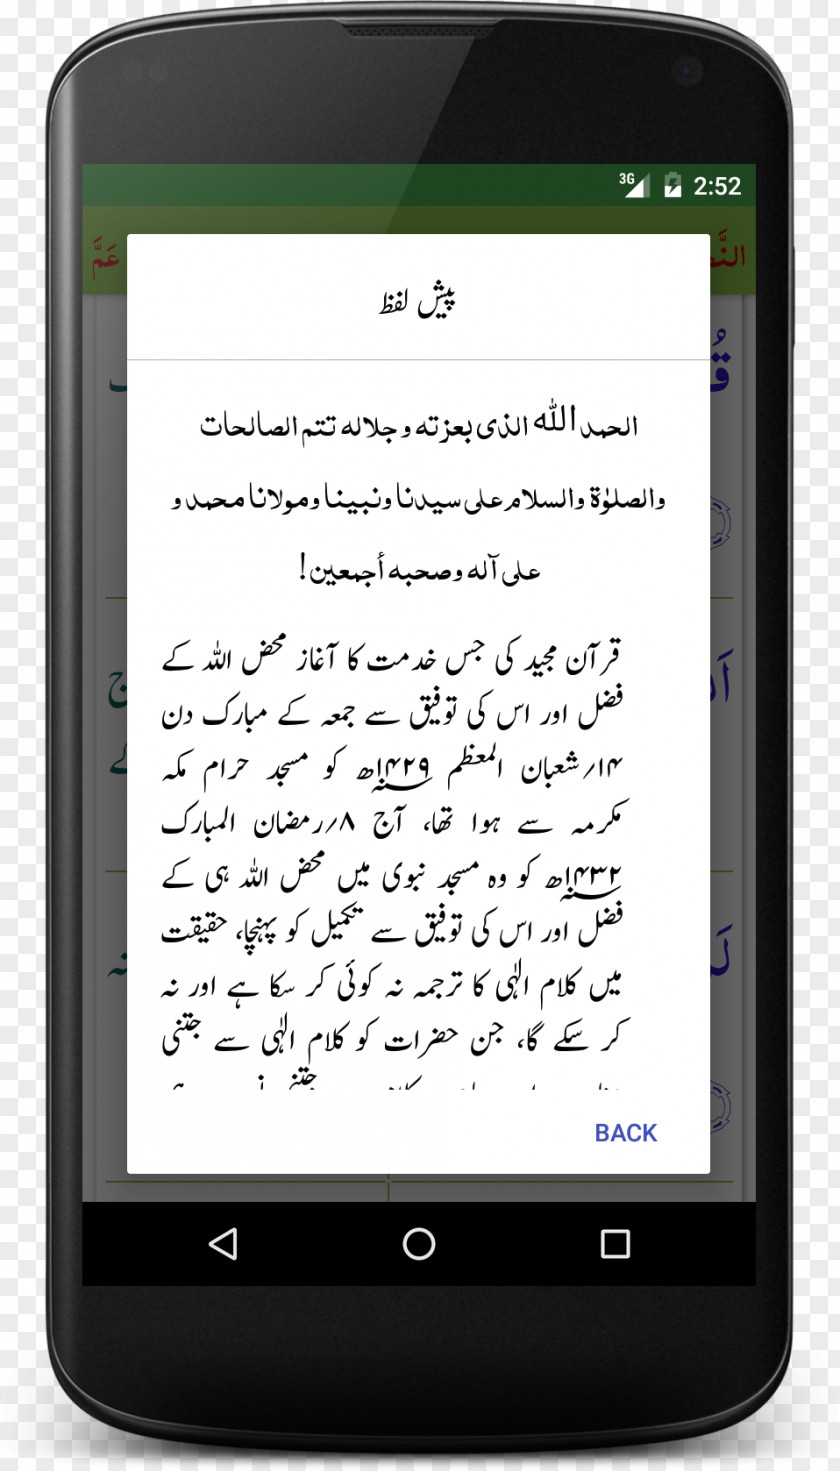 Quran App Feature Phone Smartphone Amazon.com Barnes & Noble Nook Comparison Of E-readers PNG